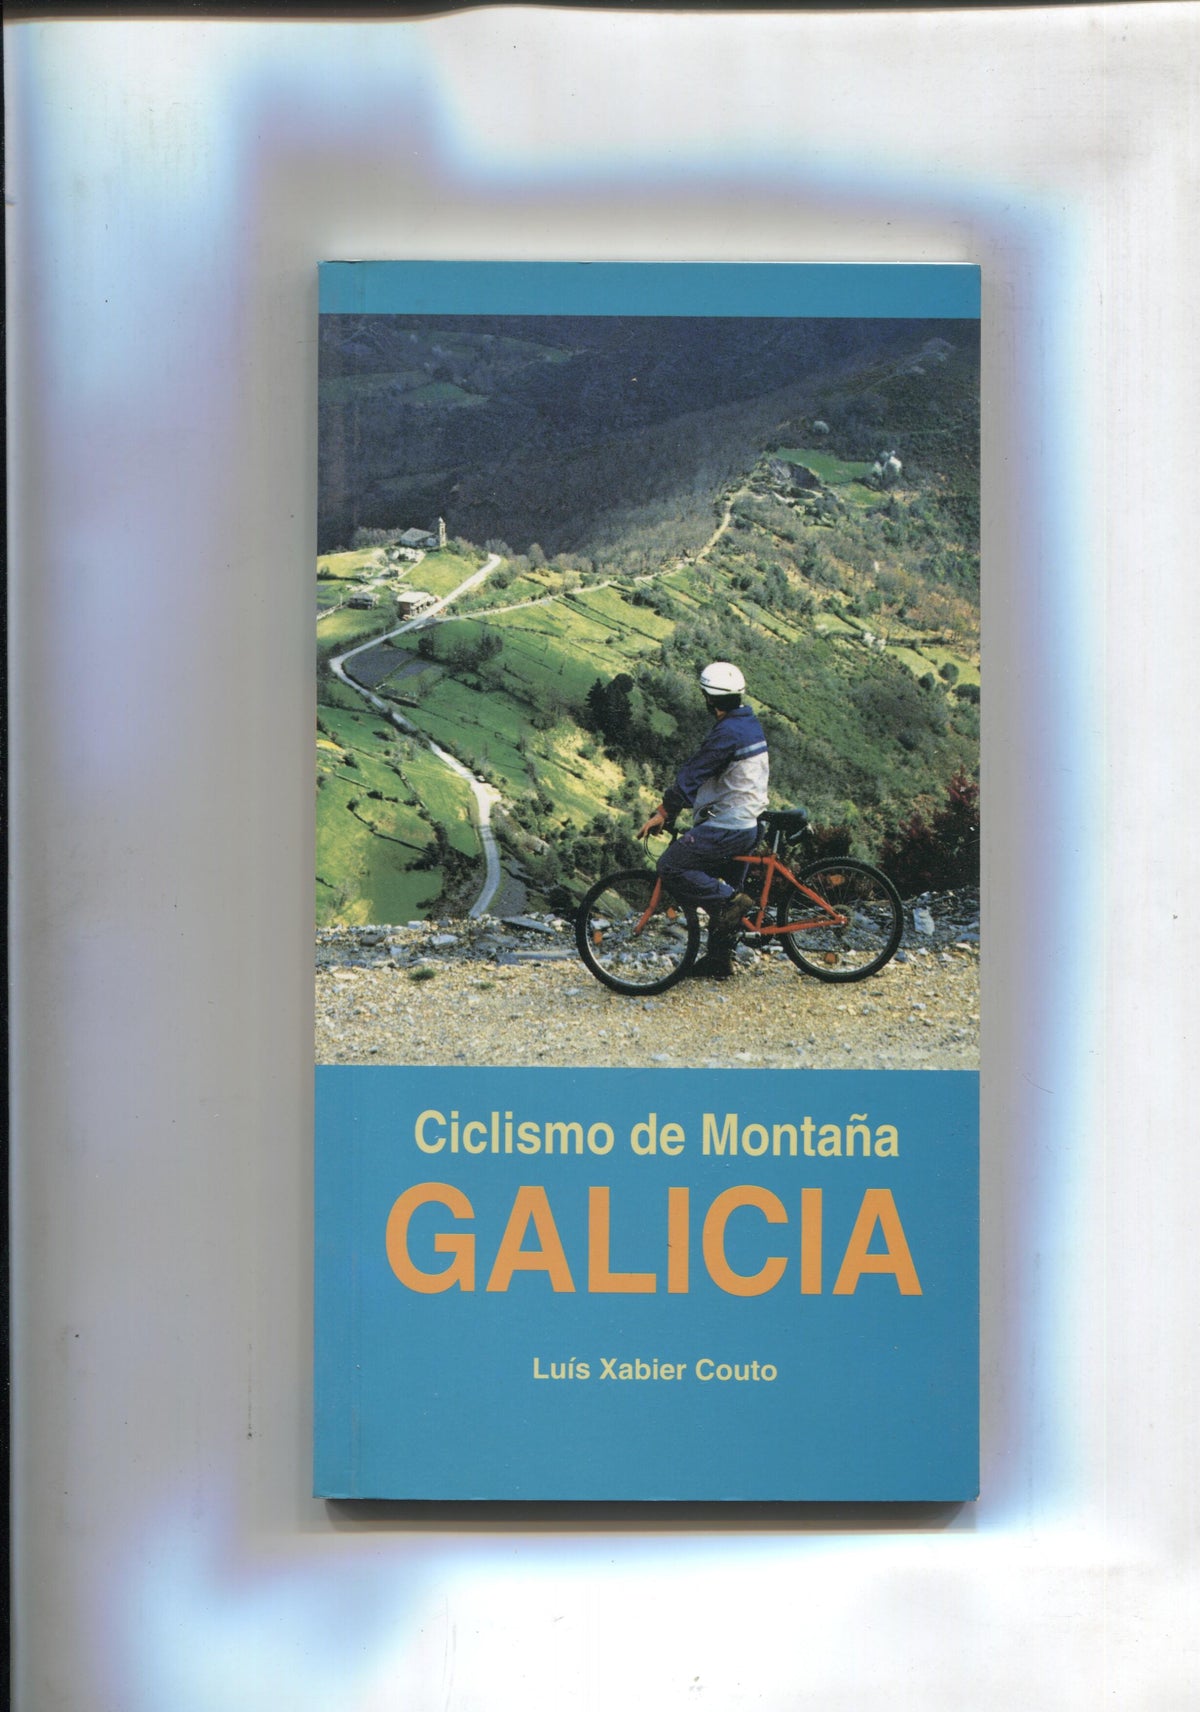 Ciclismo de Nontaña. Galicia